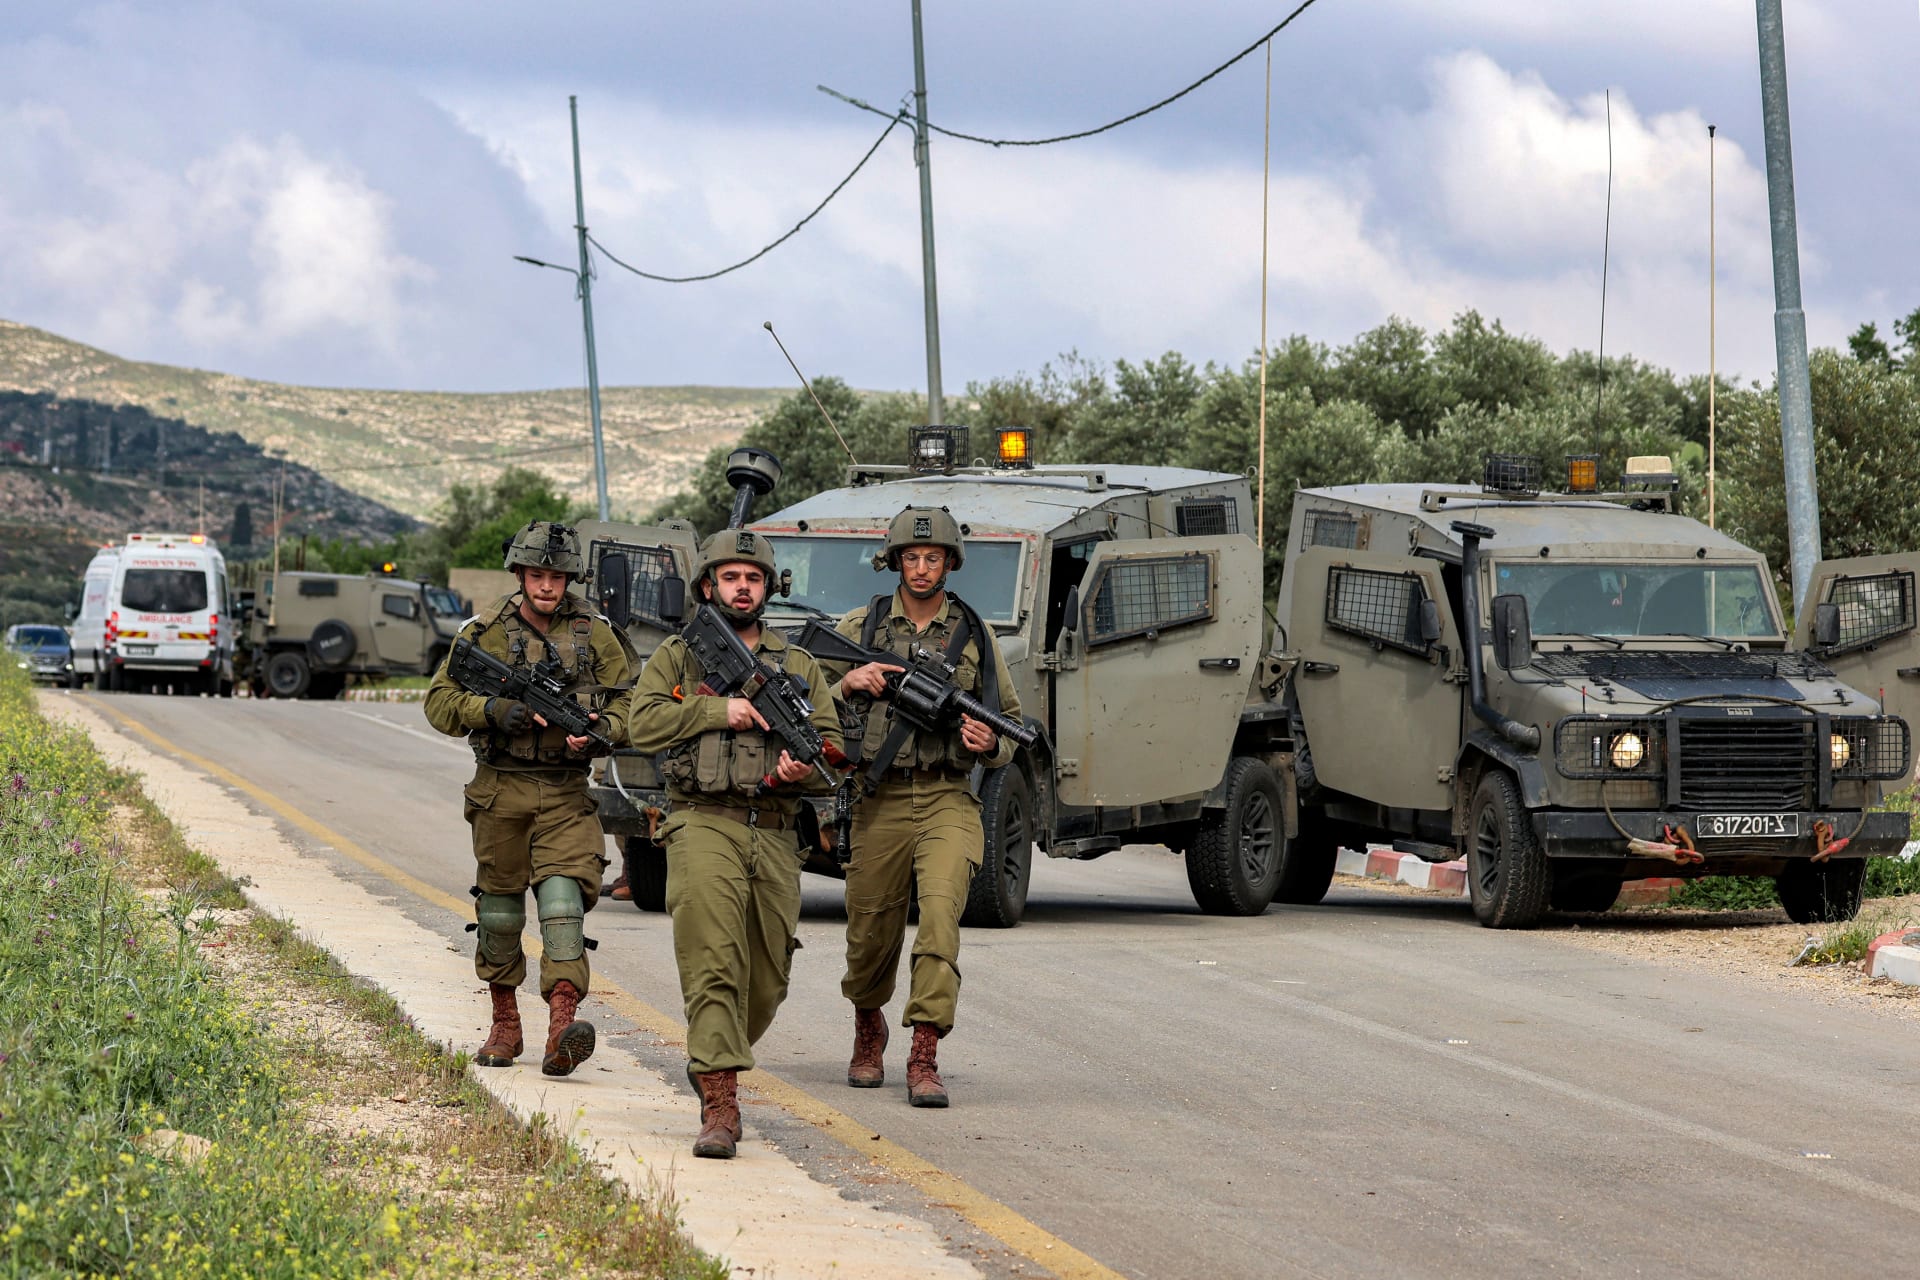 نجمة داود الحمراء: مقتل 4 إسرائيليين في إطلاق نار قرب مستوطنة بالضفة الغربية